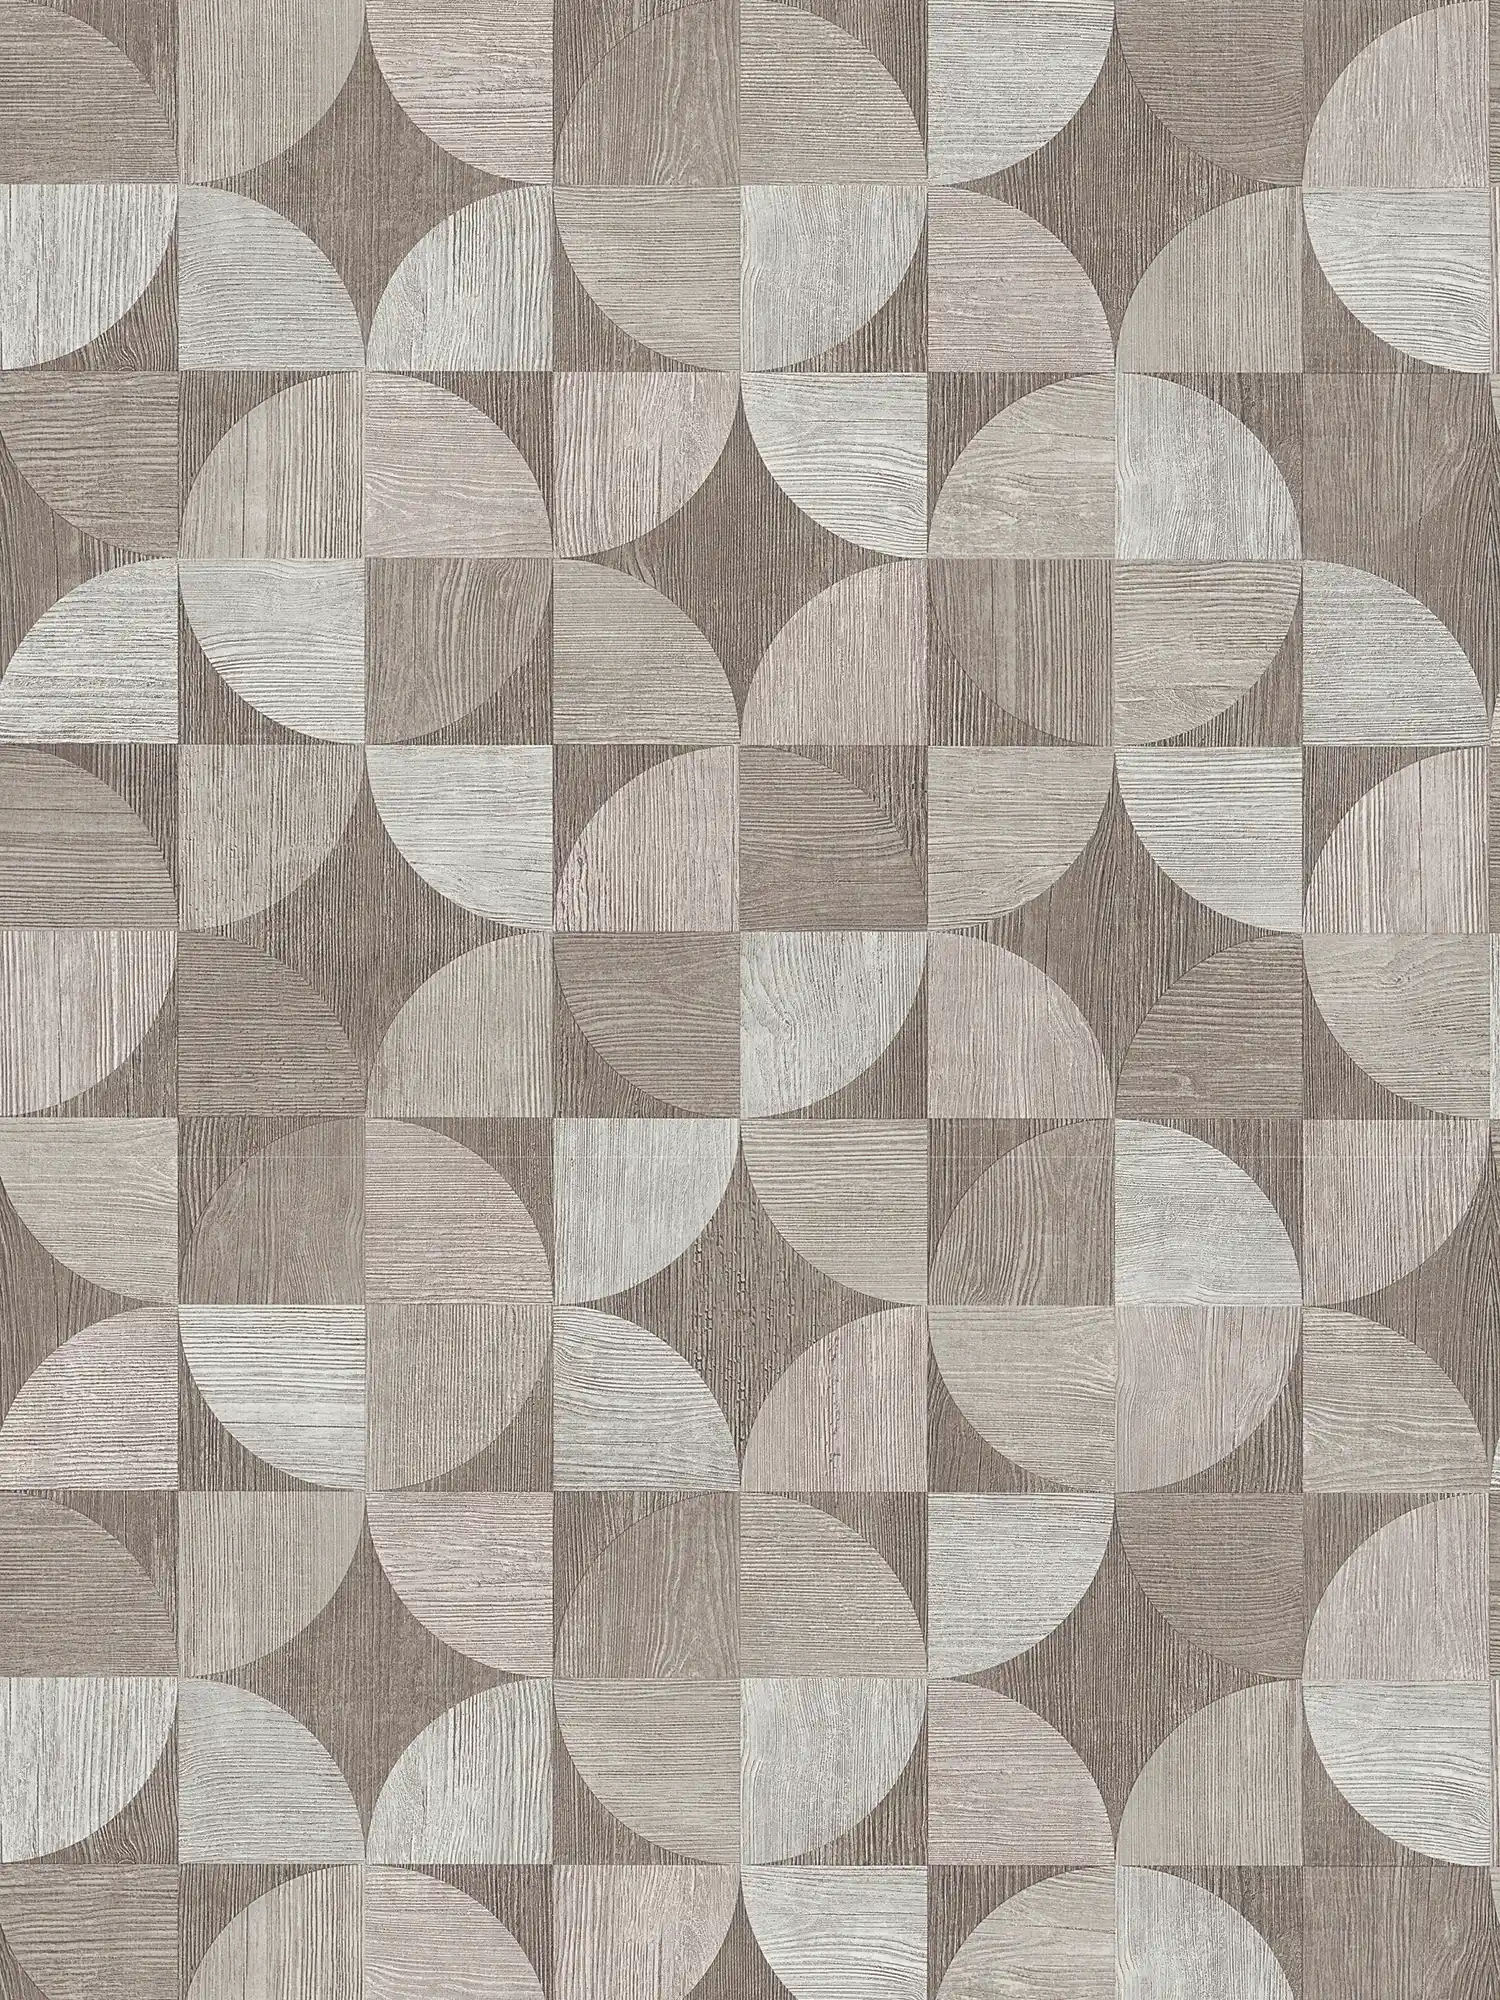         Behang met grafisch patroon in houtlook - grijs
    